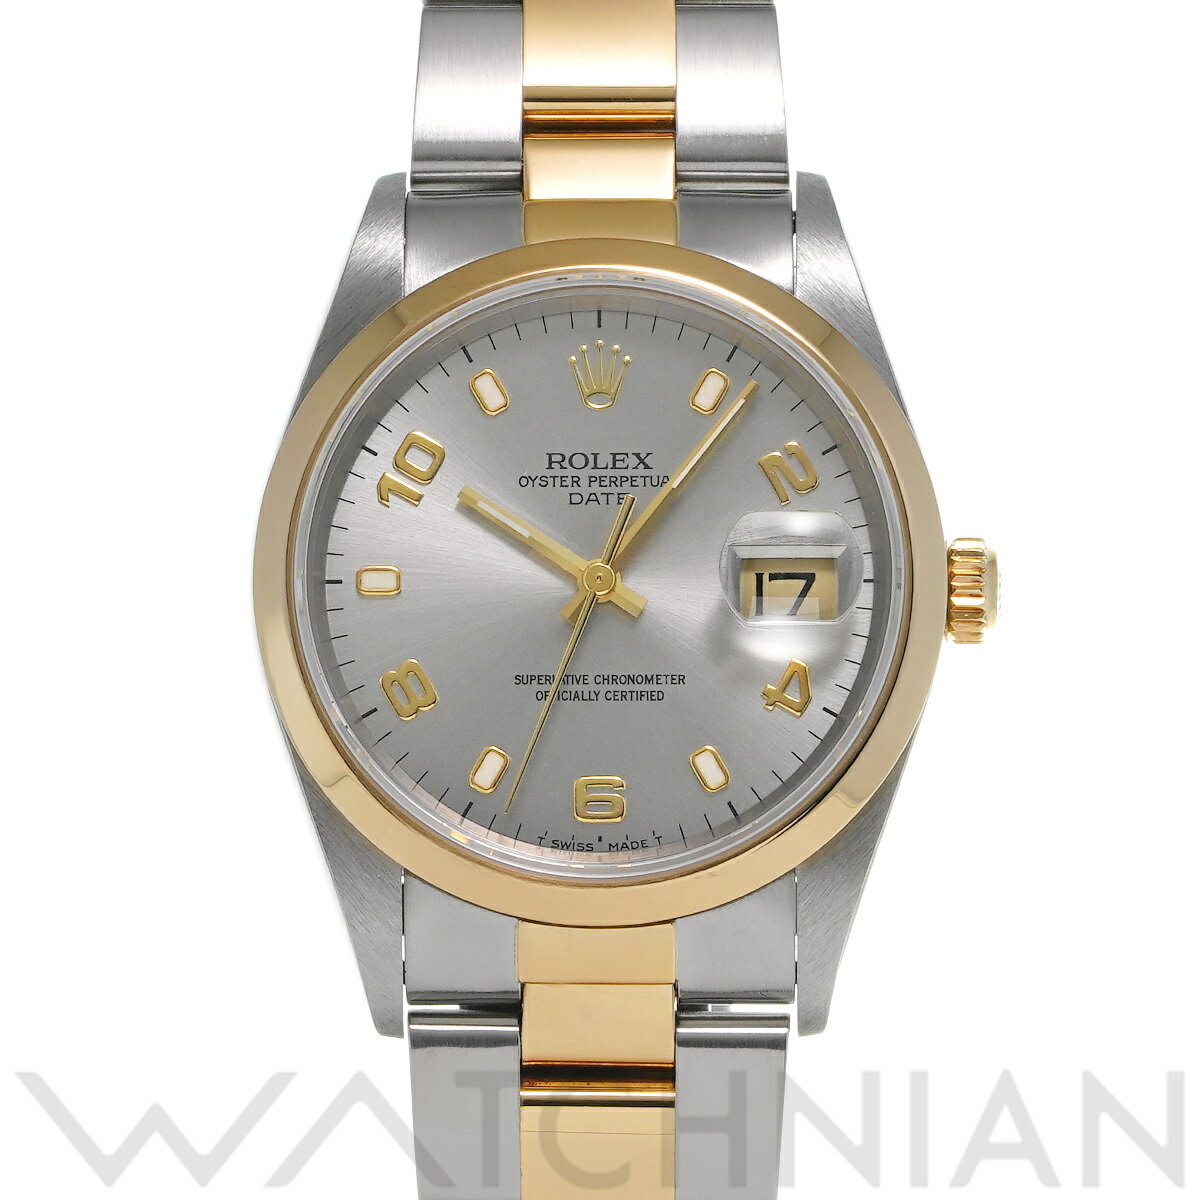 【5種選べるクーポン】【ローン60回払い無金利】【中古】 ロレックス ROLEX オイスターパーペチュアル デイト 15203 A番(1999年頃製造) グレー メンズ 腕時計 ロレックス 時計 高級腕時計 ブランド